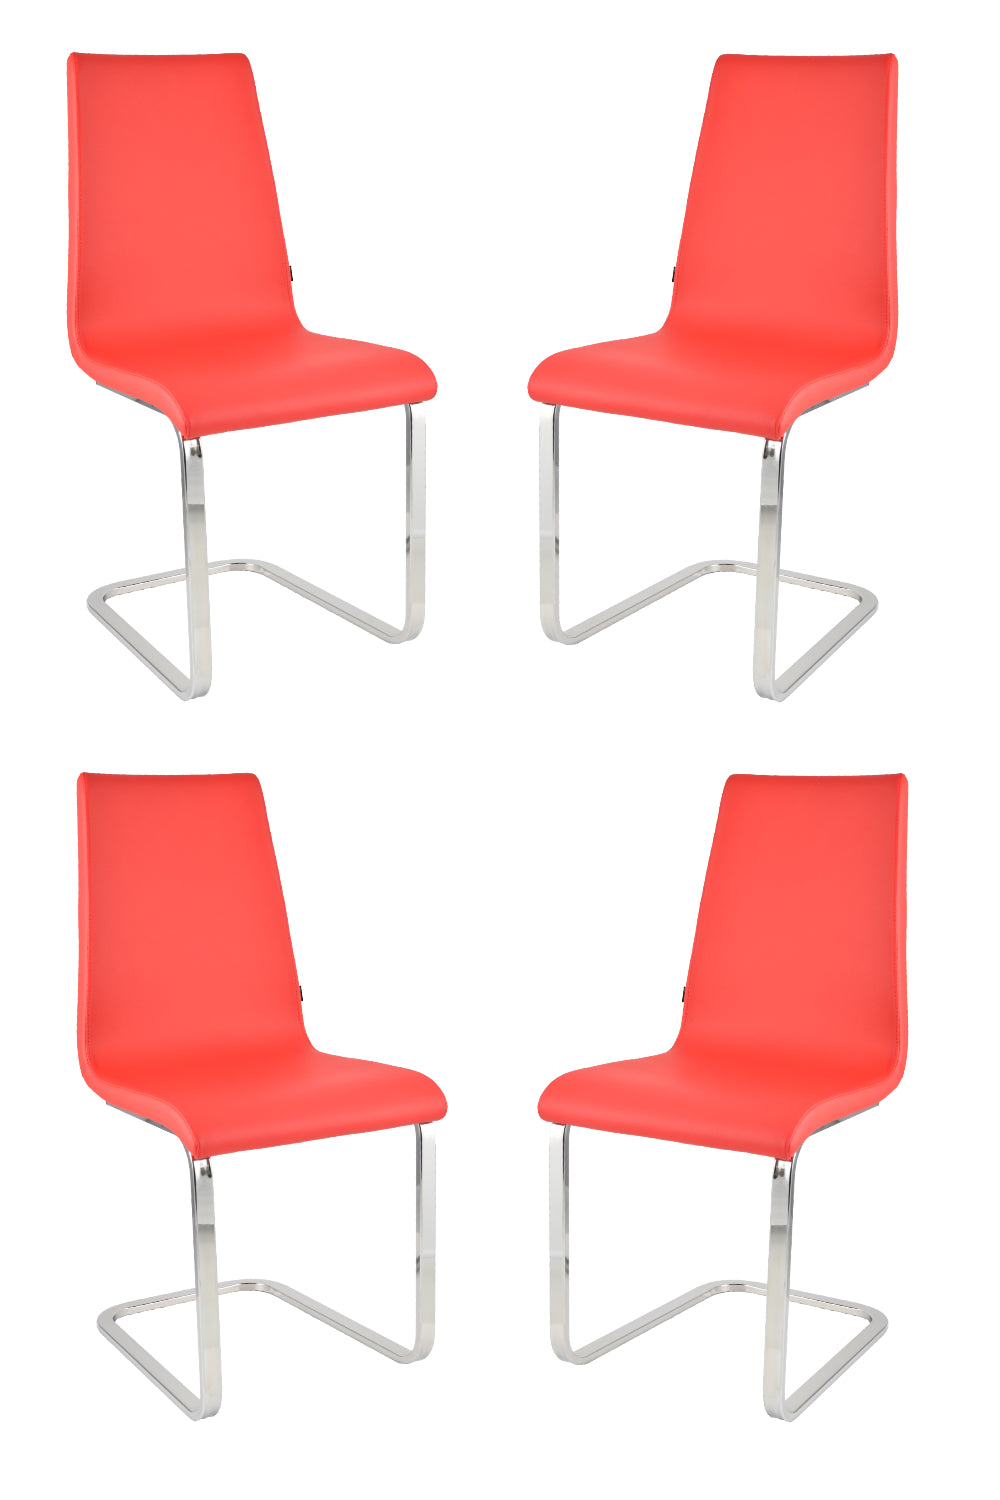 Tommychairs Set 4 sillas Berlin Estilo Cantilever con Patas de Acero Cromado de Alta Resistencia Asiento en Madera Multicapa tapizado en Polipiel Roja